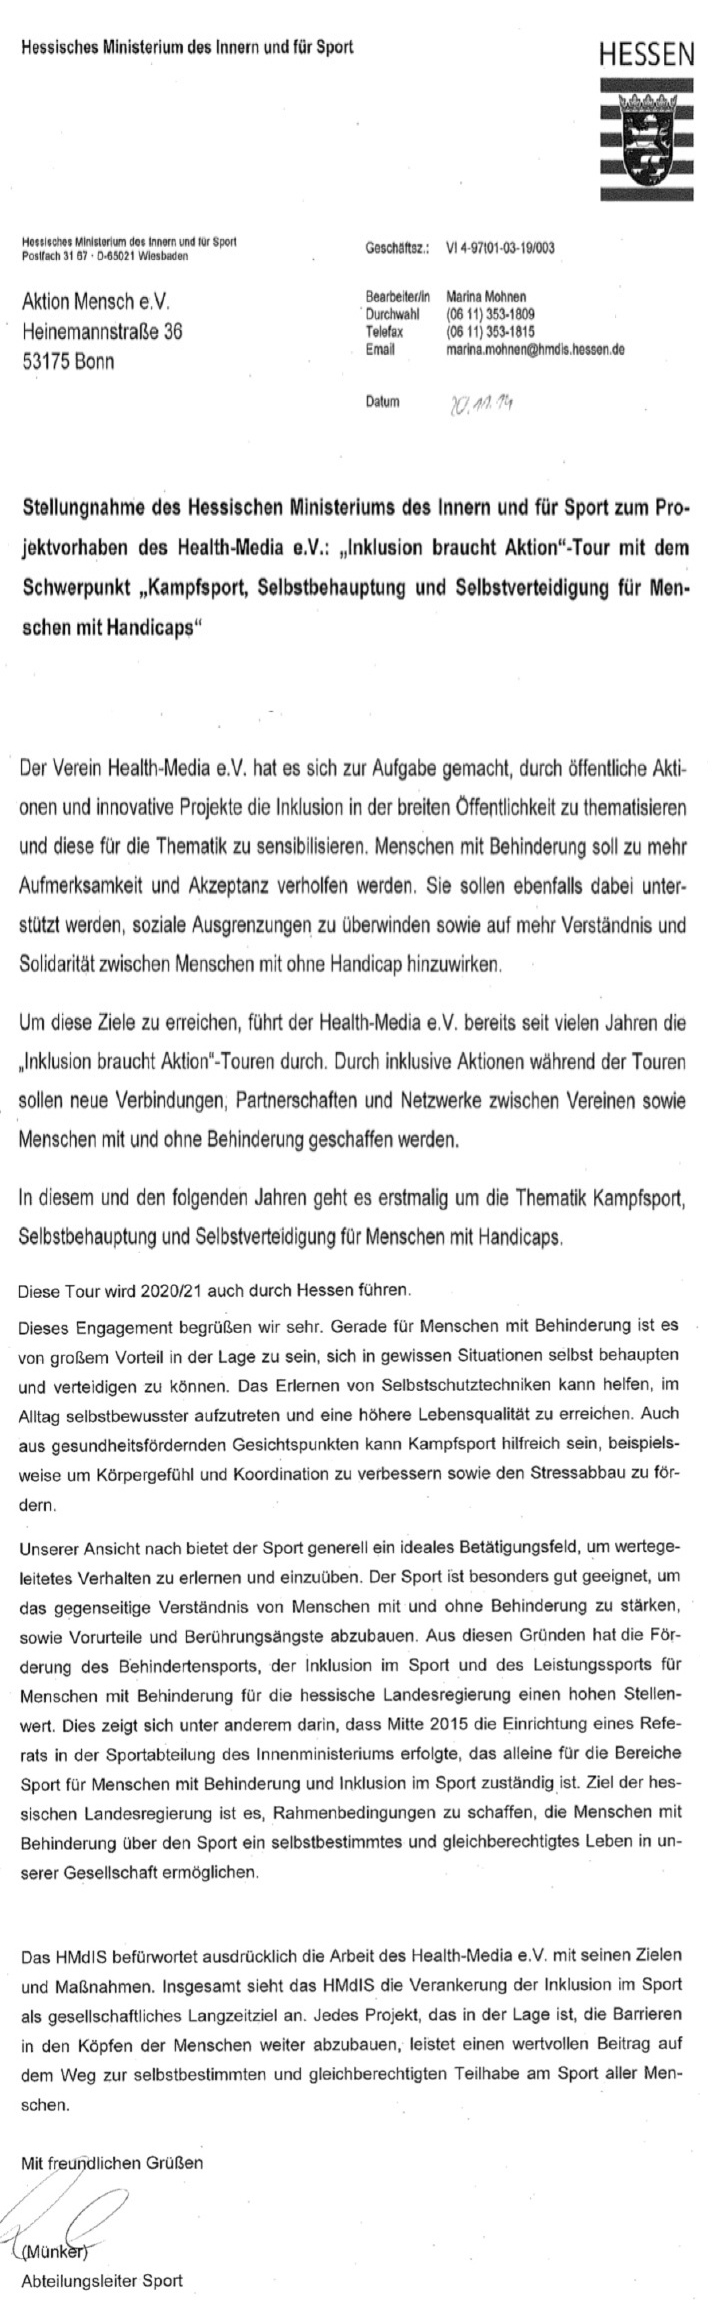 Statement von Uwe Münker - Abteilungsleiter Sport im Innenministerium Hessen 2019